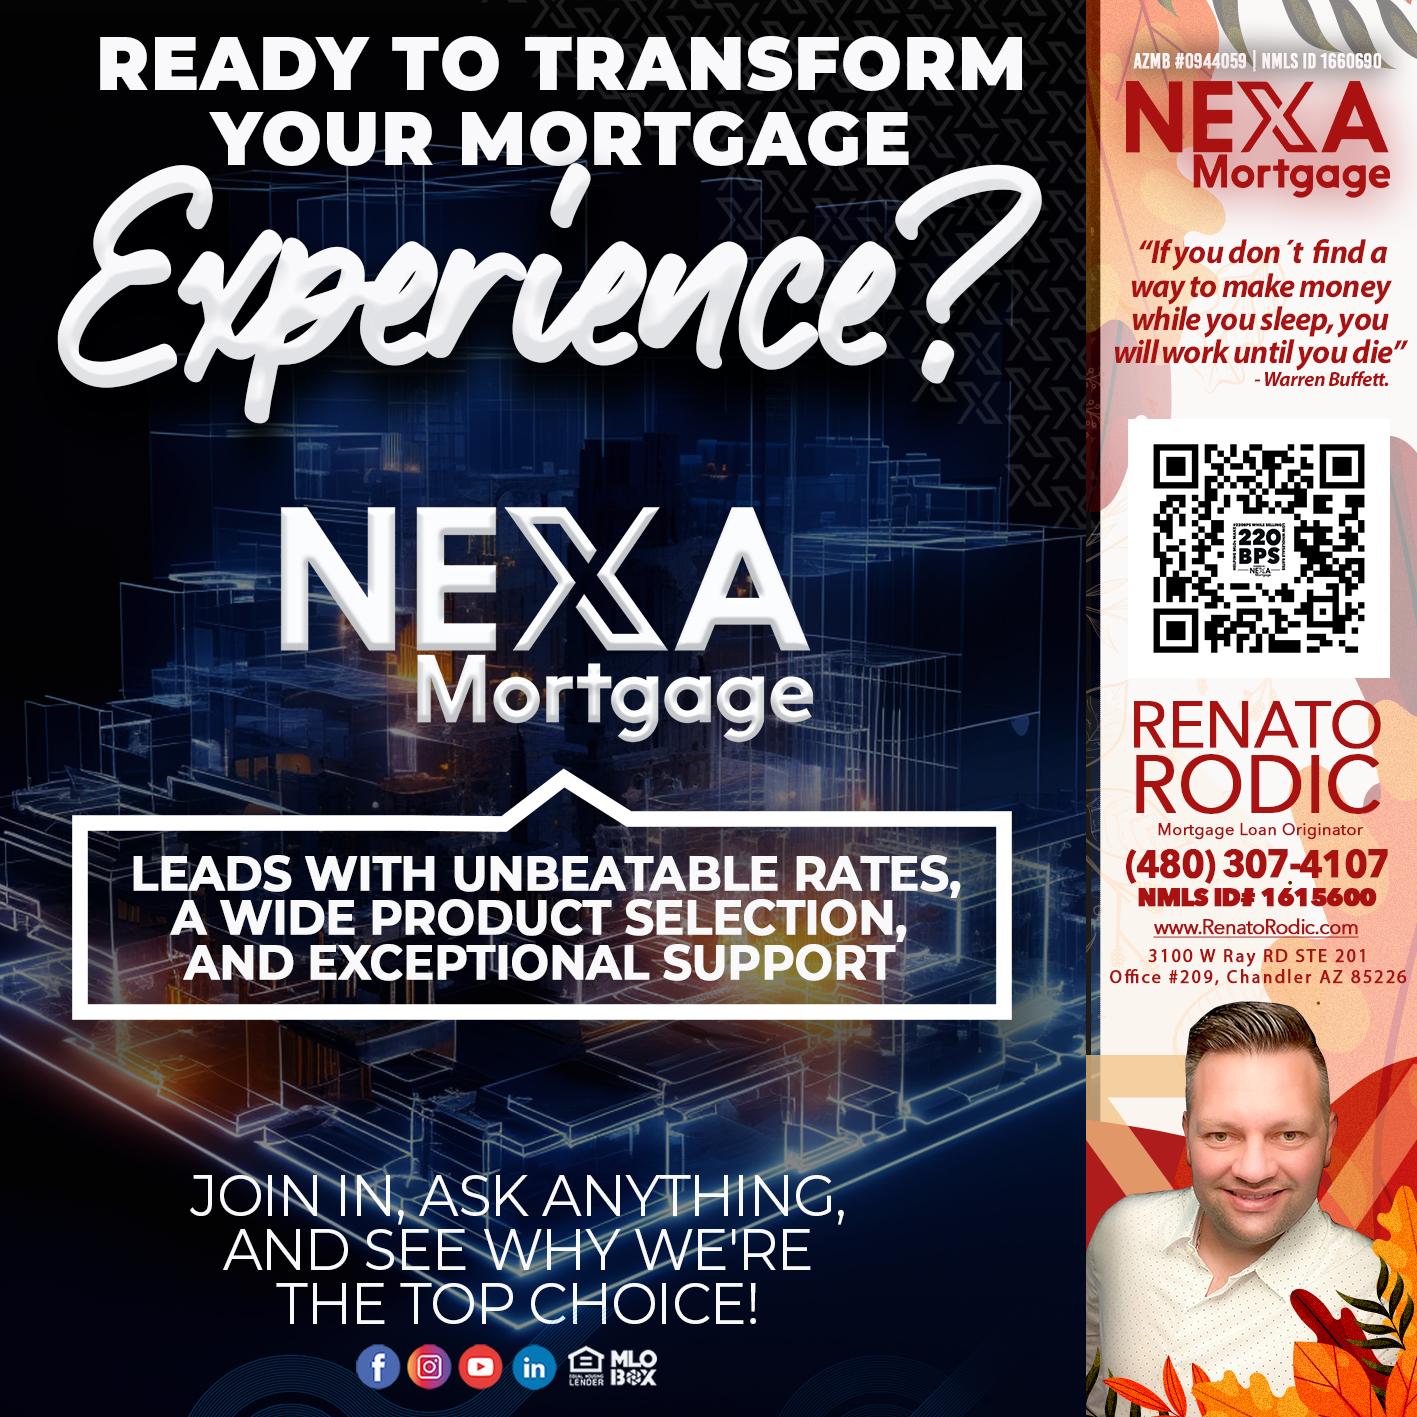 experienced - Renato Rodic -Mortgage Loan Originator